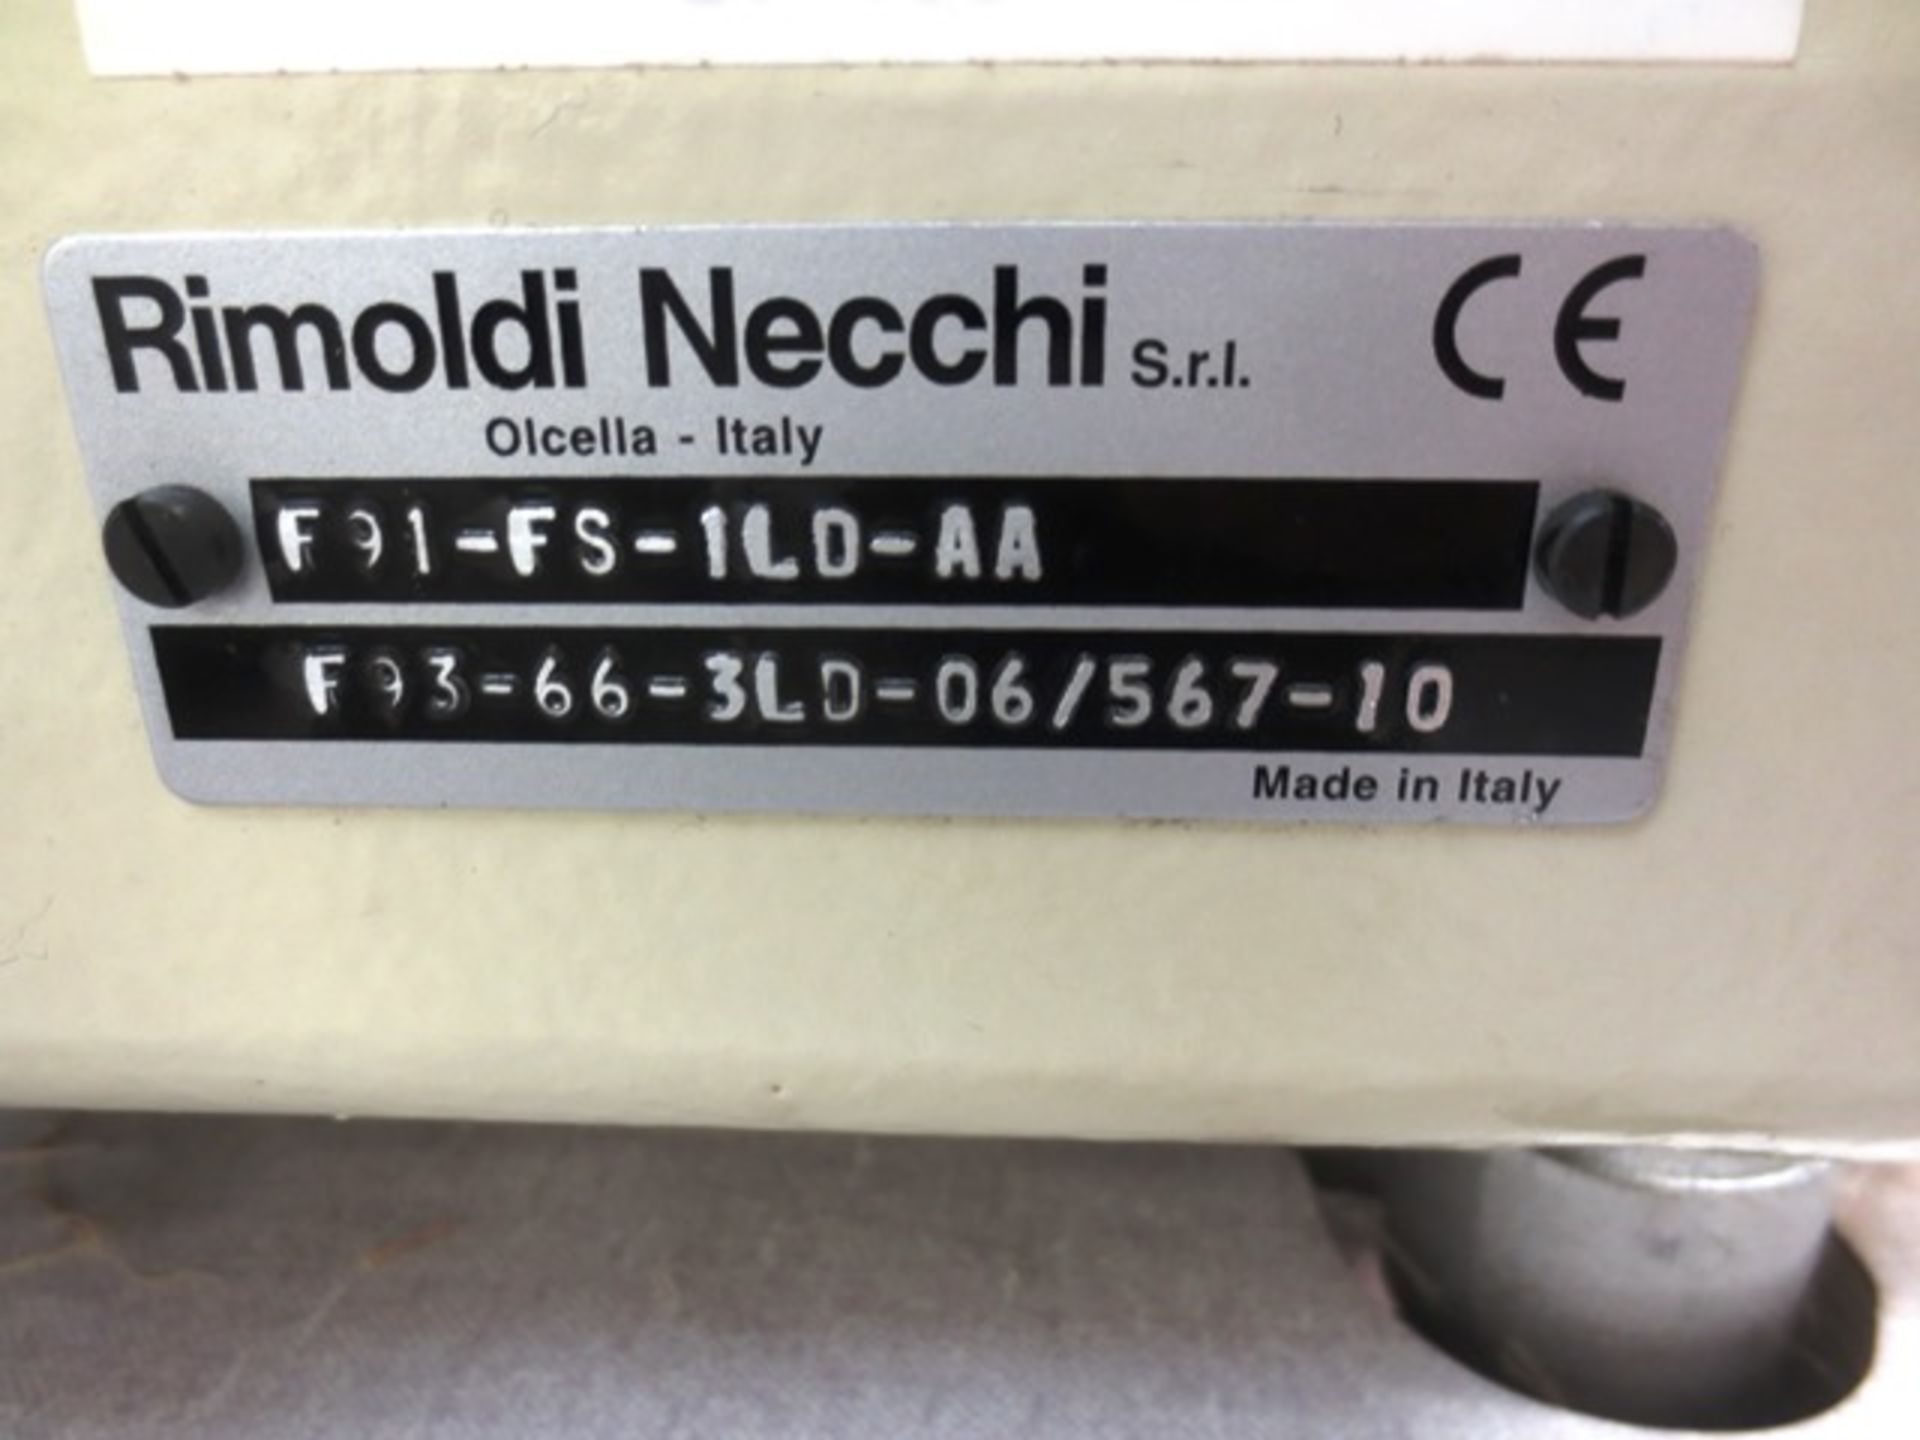 Rimoldi Necchi Mizar 5 spool sewing machine, model: F91.FS.ILD-AA, serial no: F93-66-3LD-06/567- - Image 4 of 5